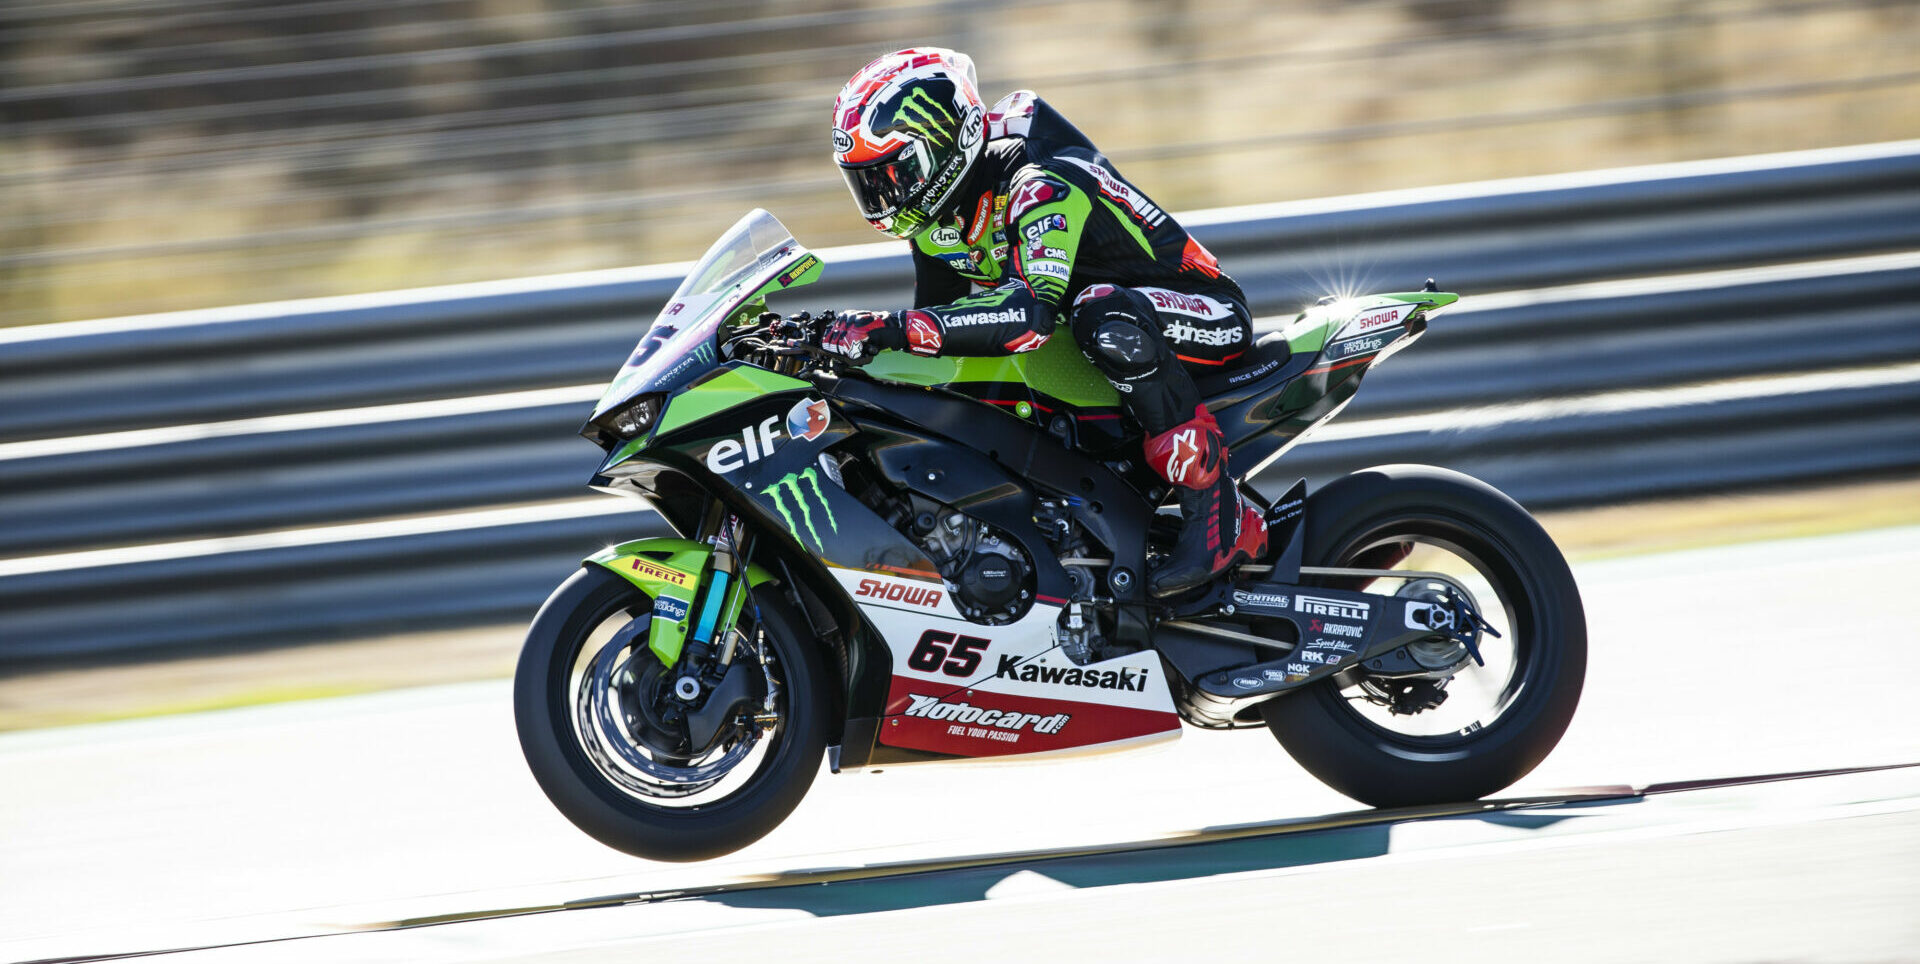 Jonathan Rea (65) during a recent test at MotorLand Aragon. Photo courtesy Kawasaki.